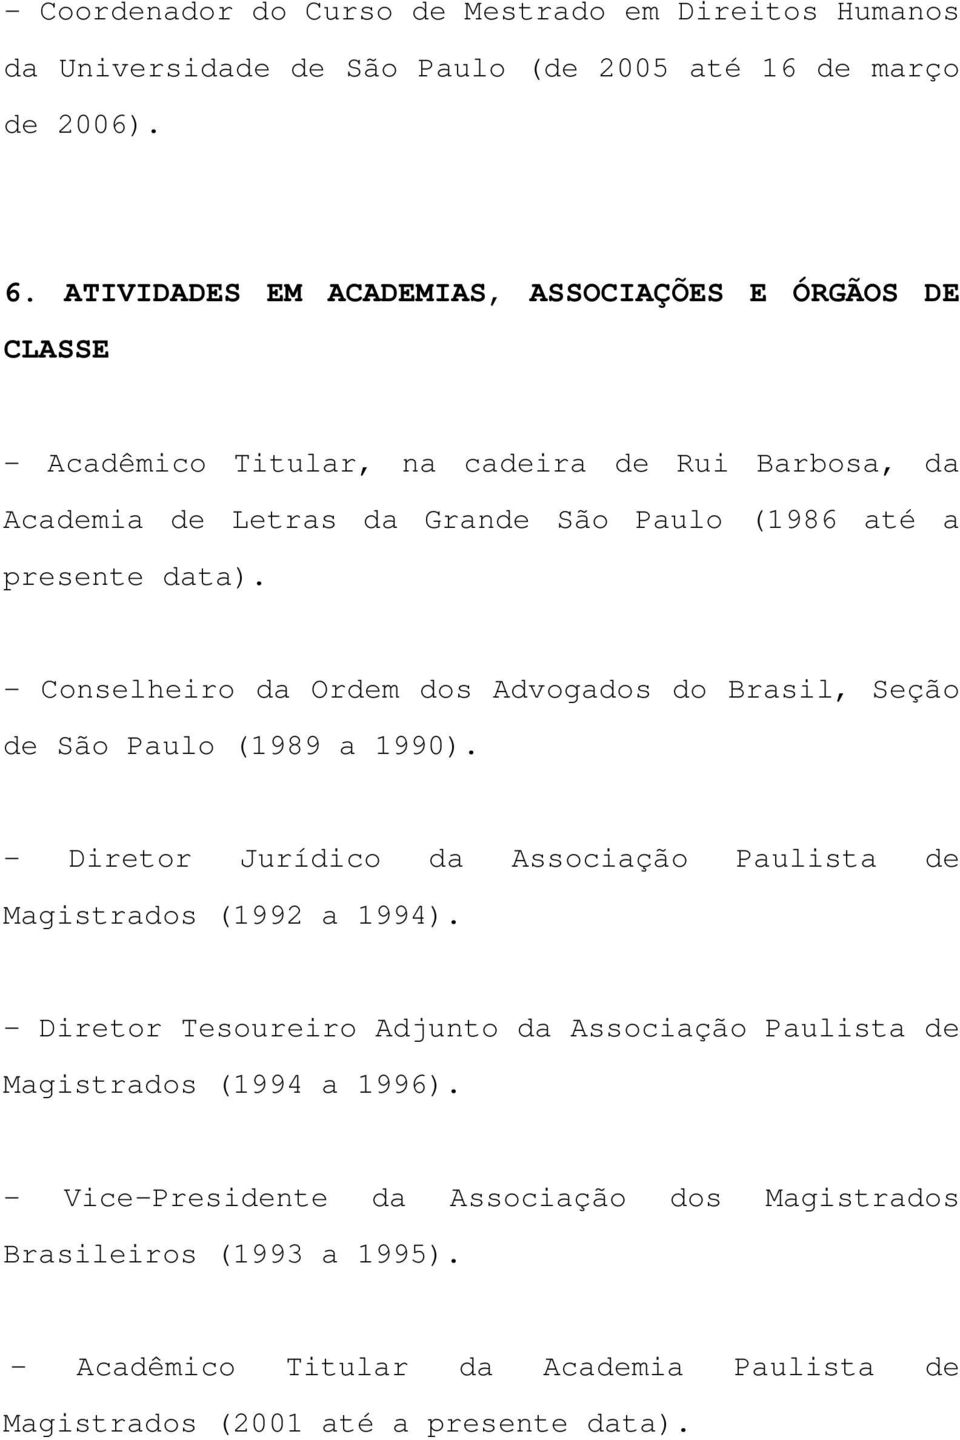 - Conselheiro da Ordem dos Advogados do Brasil, Seção de São Paulo (1989 a 1990). - Diretor Jurídico da Associação Paulista de Magistrados (1992 a 1994).